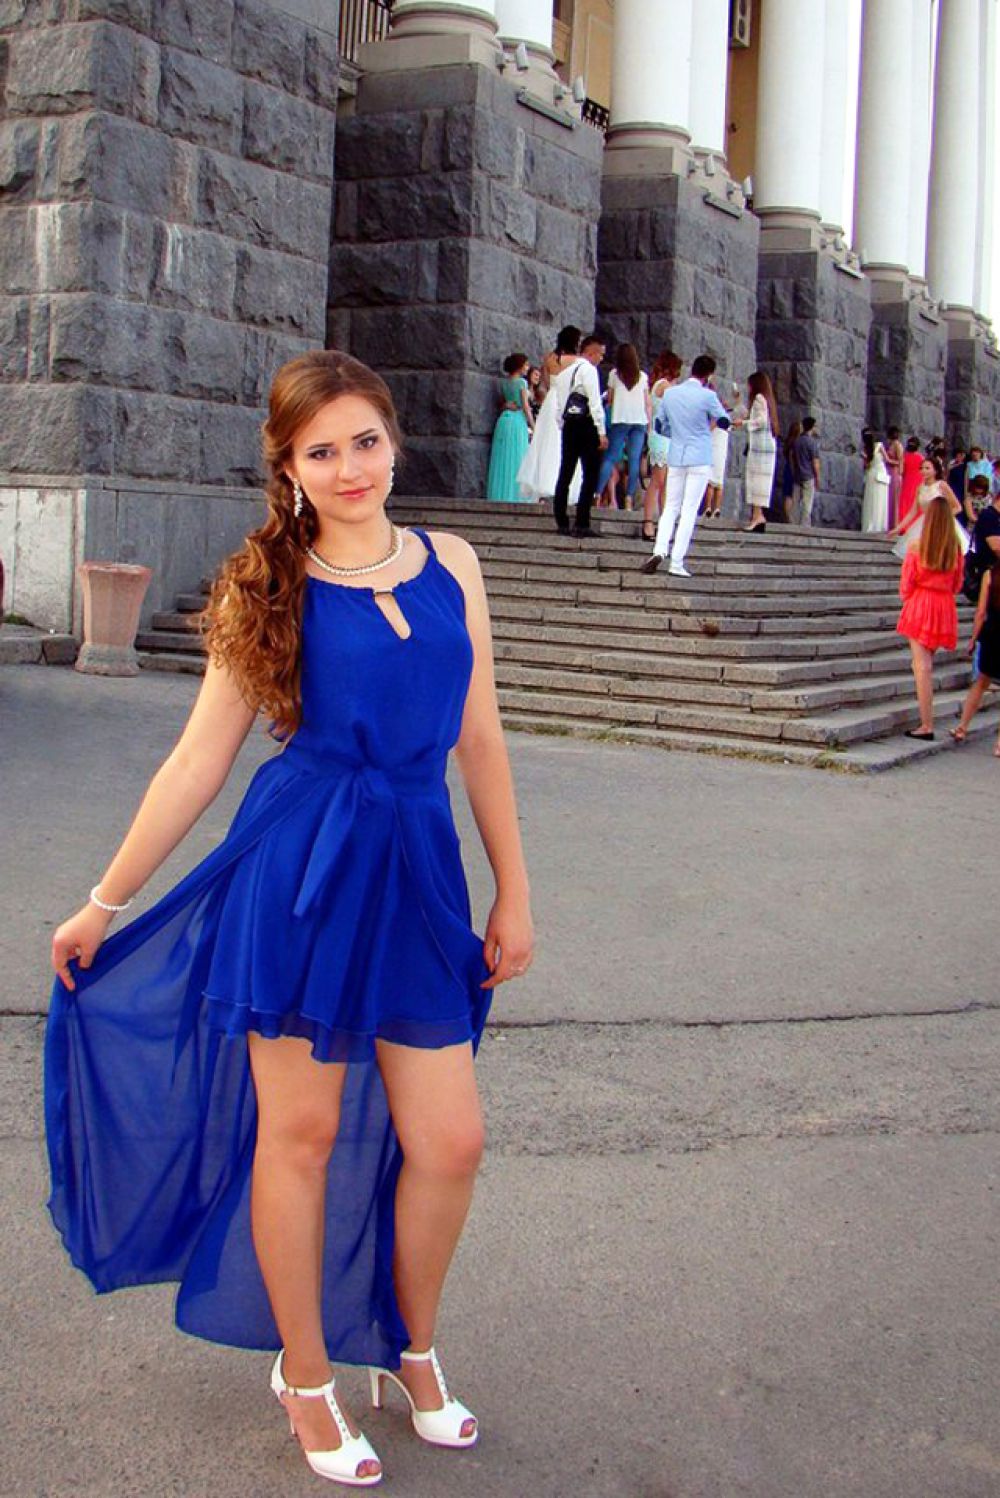 Ольга Крымцева, 18 лет, окончила гимназию №11 города Волгограда, которая входит в список 100 лучших образовательных учреждений России.